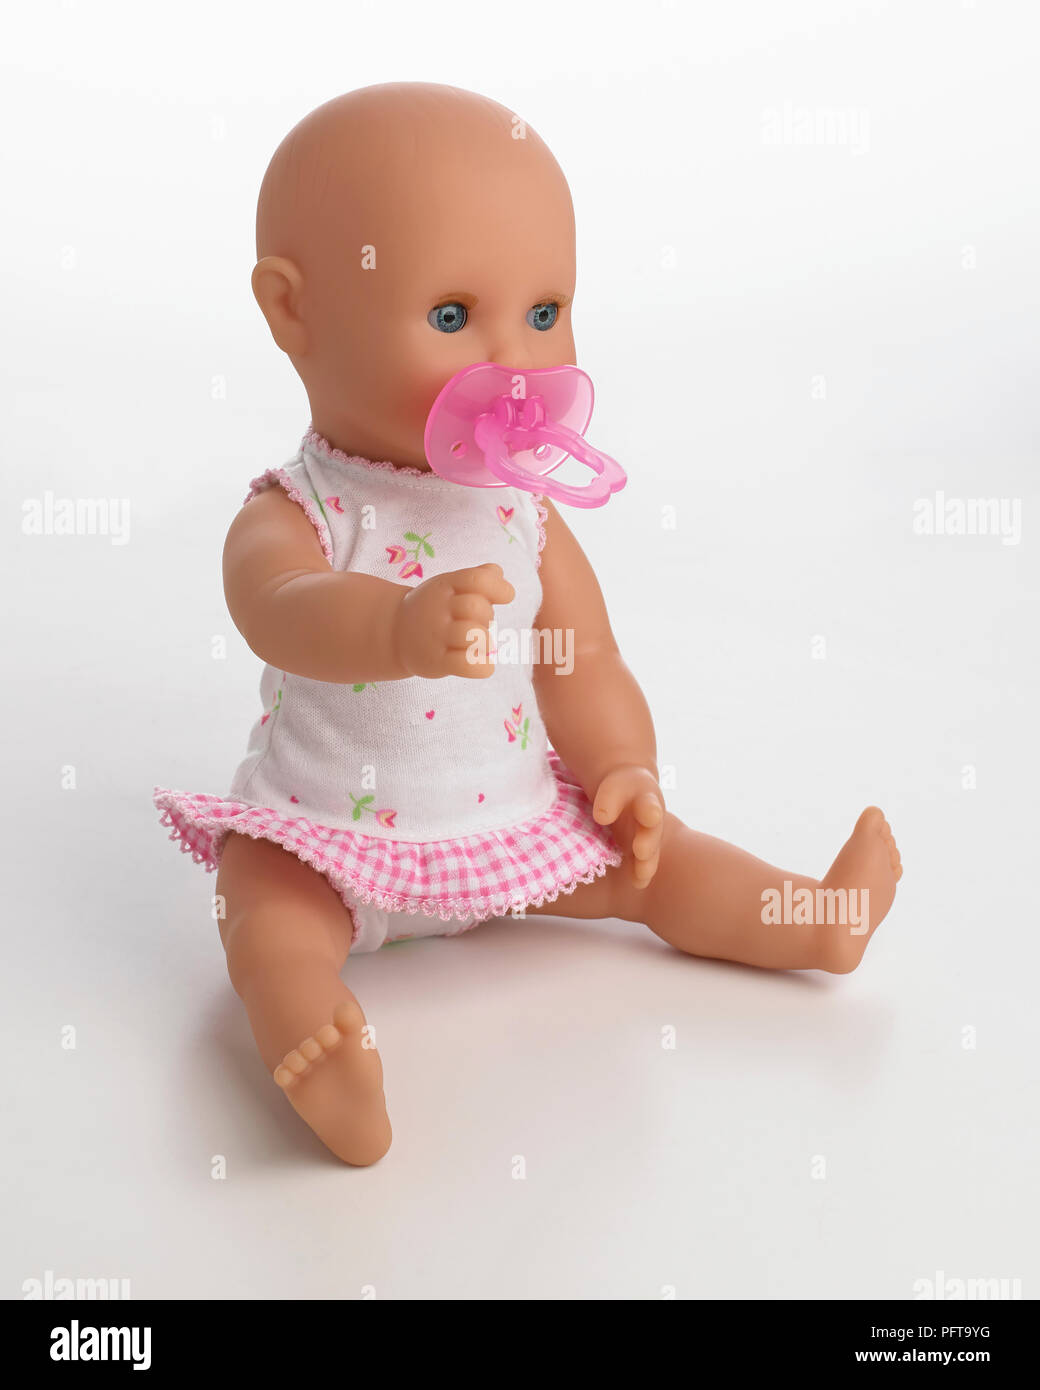 Muñeca bebé con maniquí en boca Foto de stock